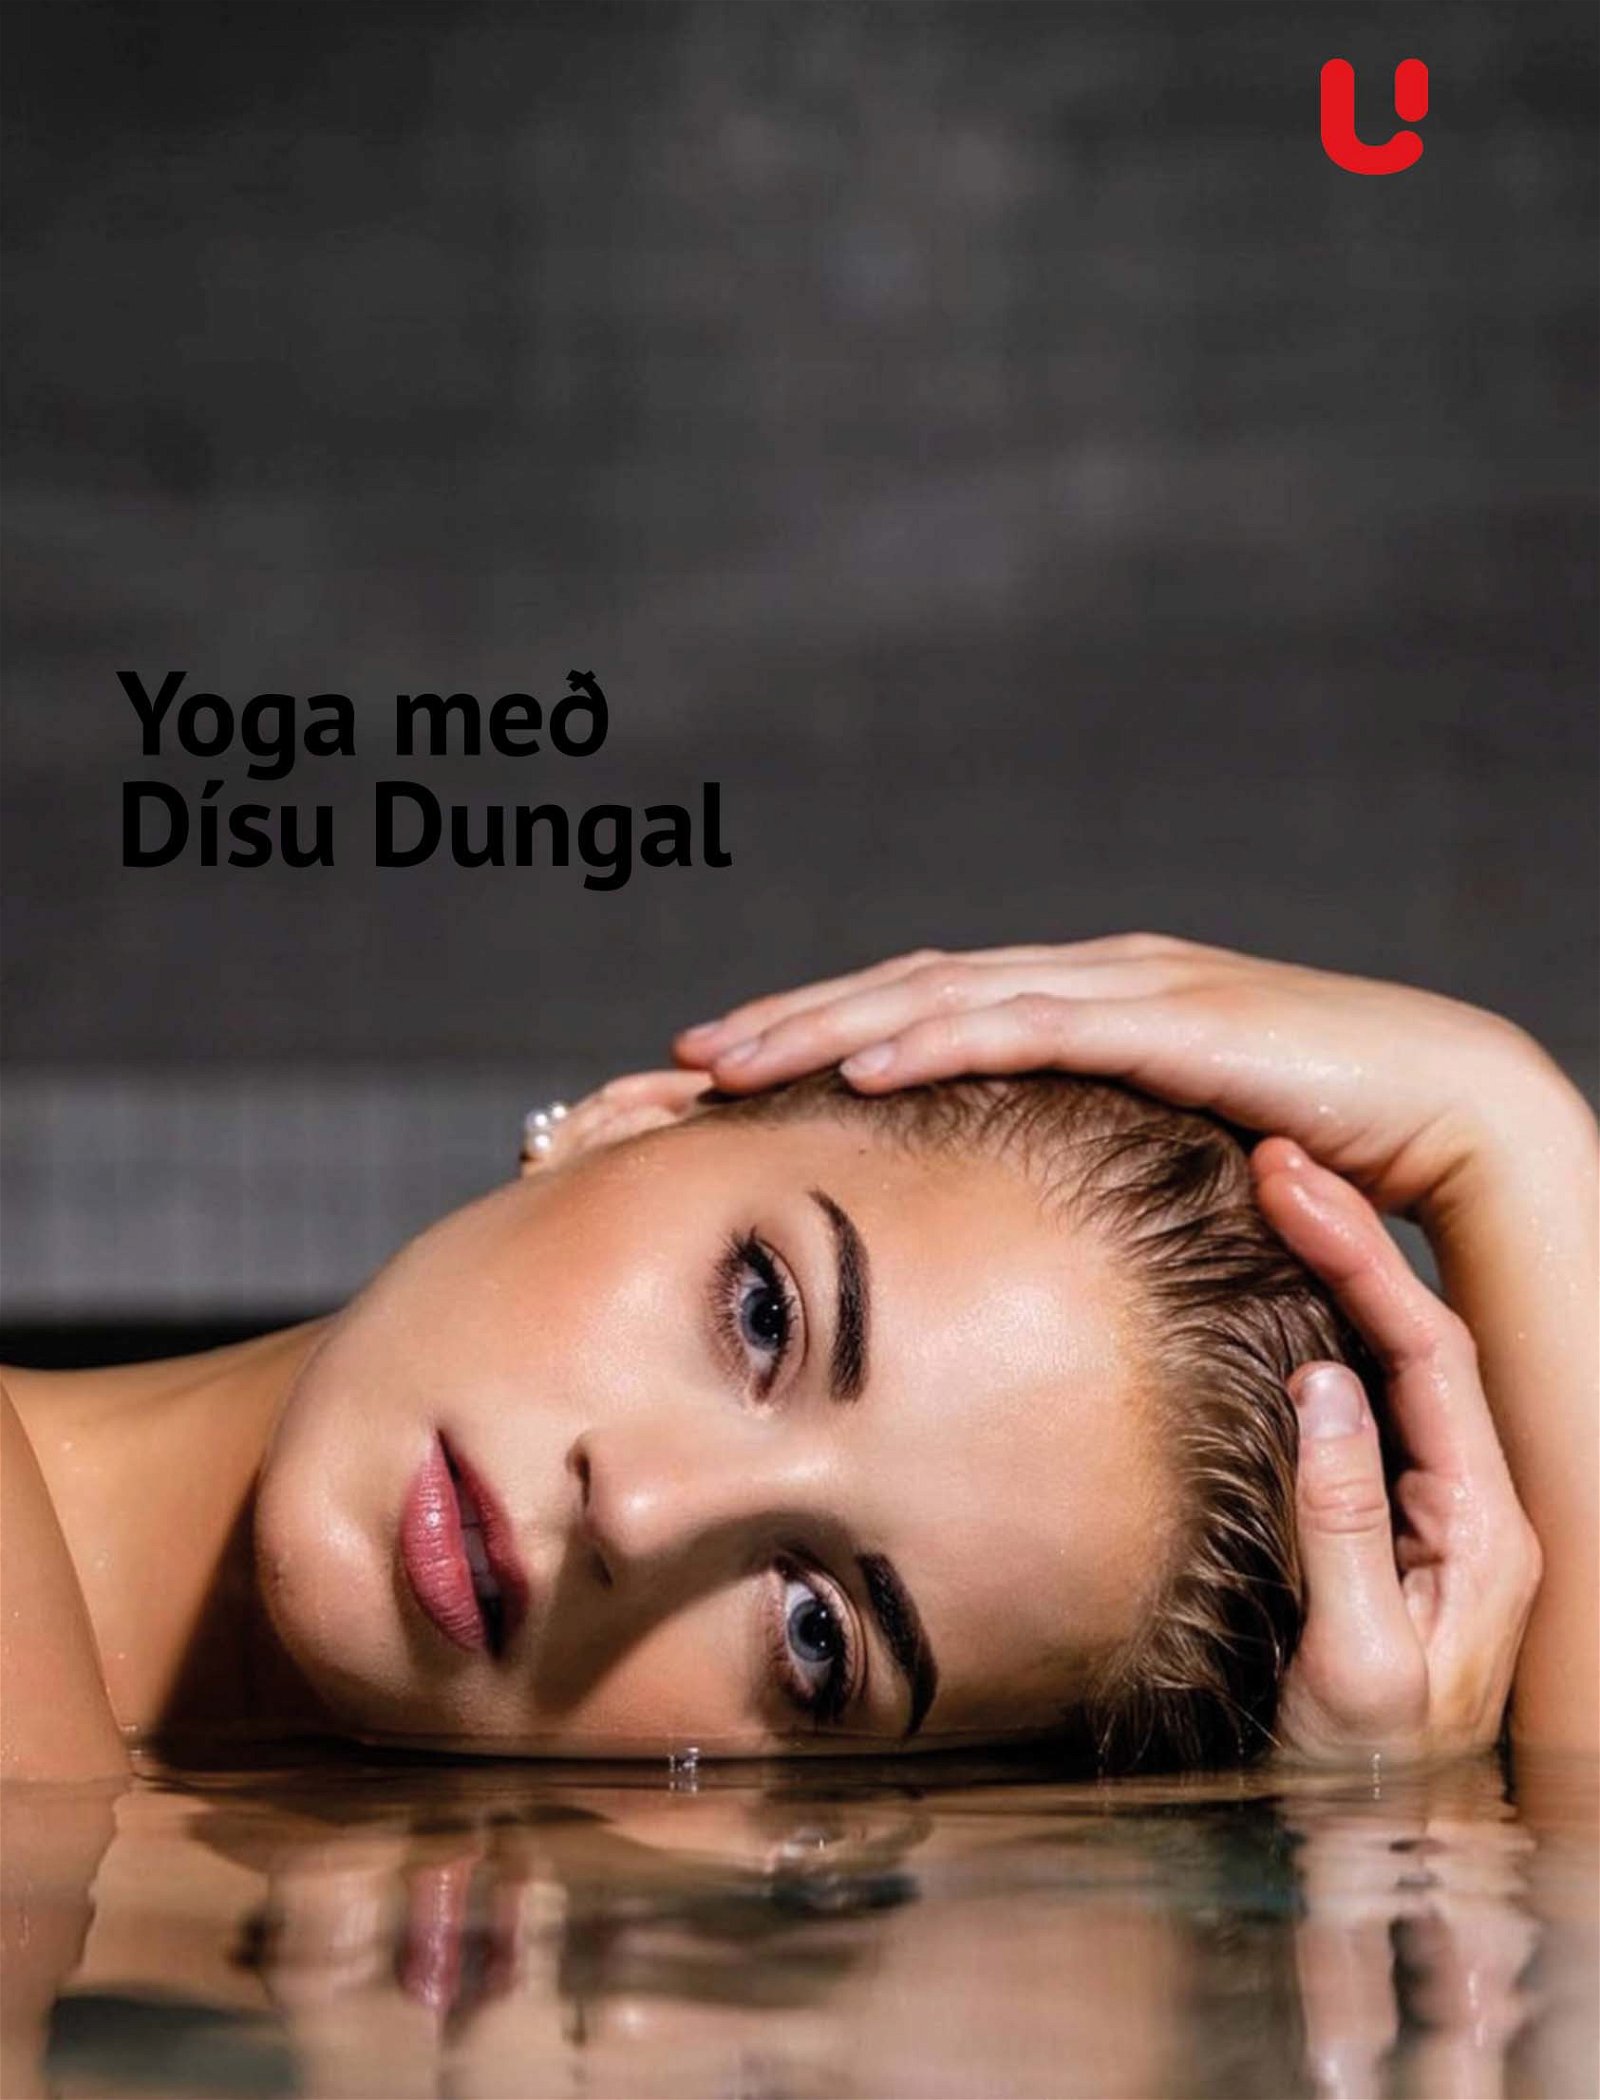 Yoga æfingar Dísu Dungal